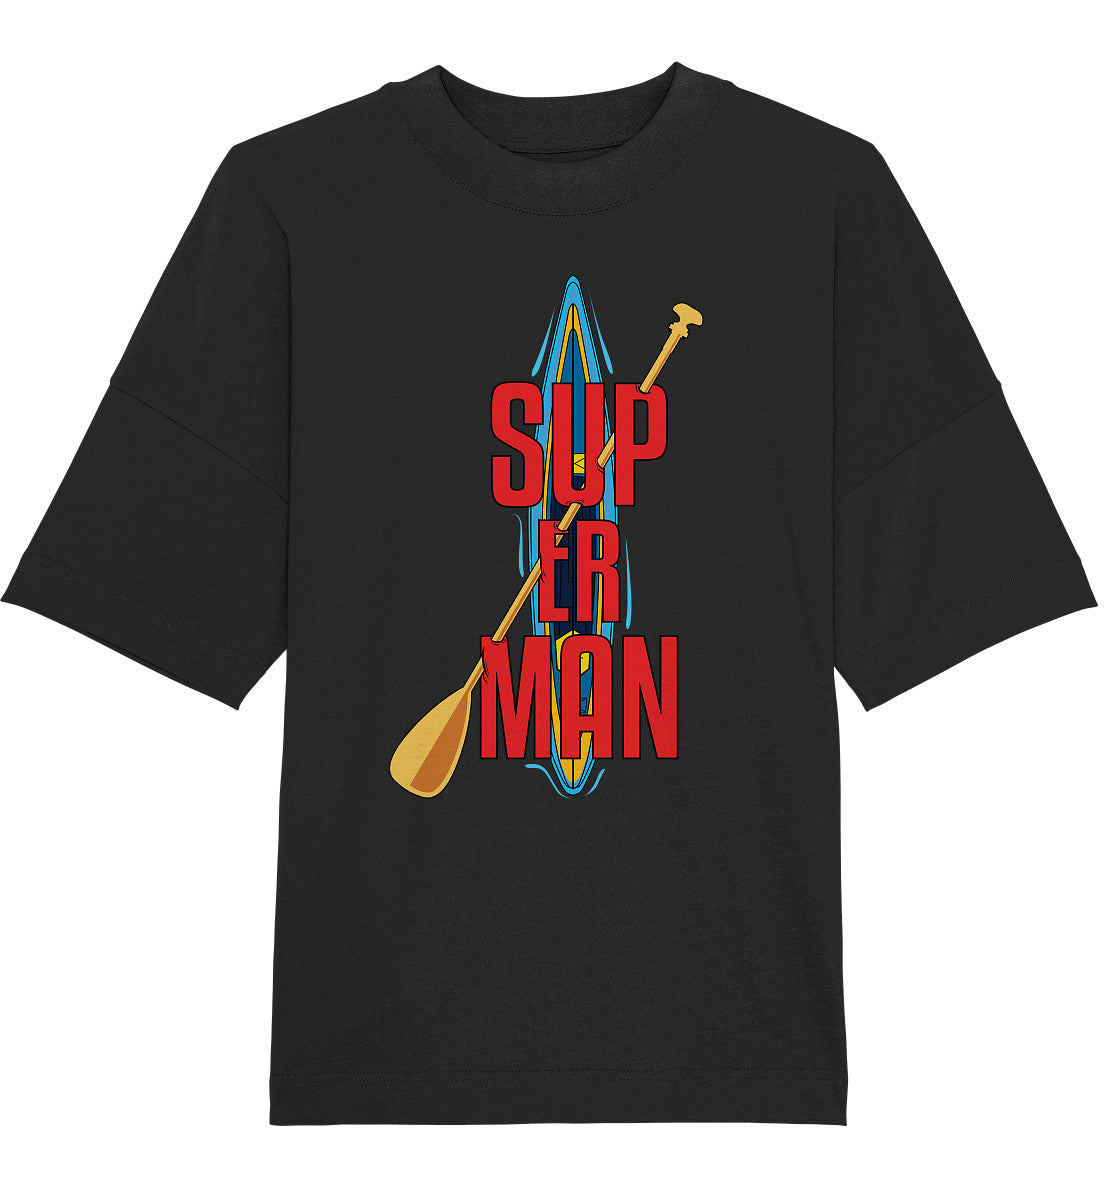 SUP ER MAN - Organic Oversize Shirt